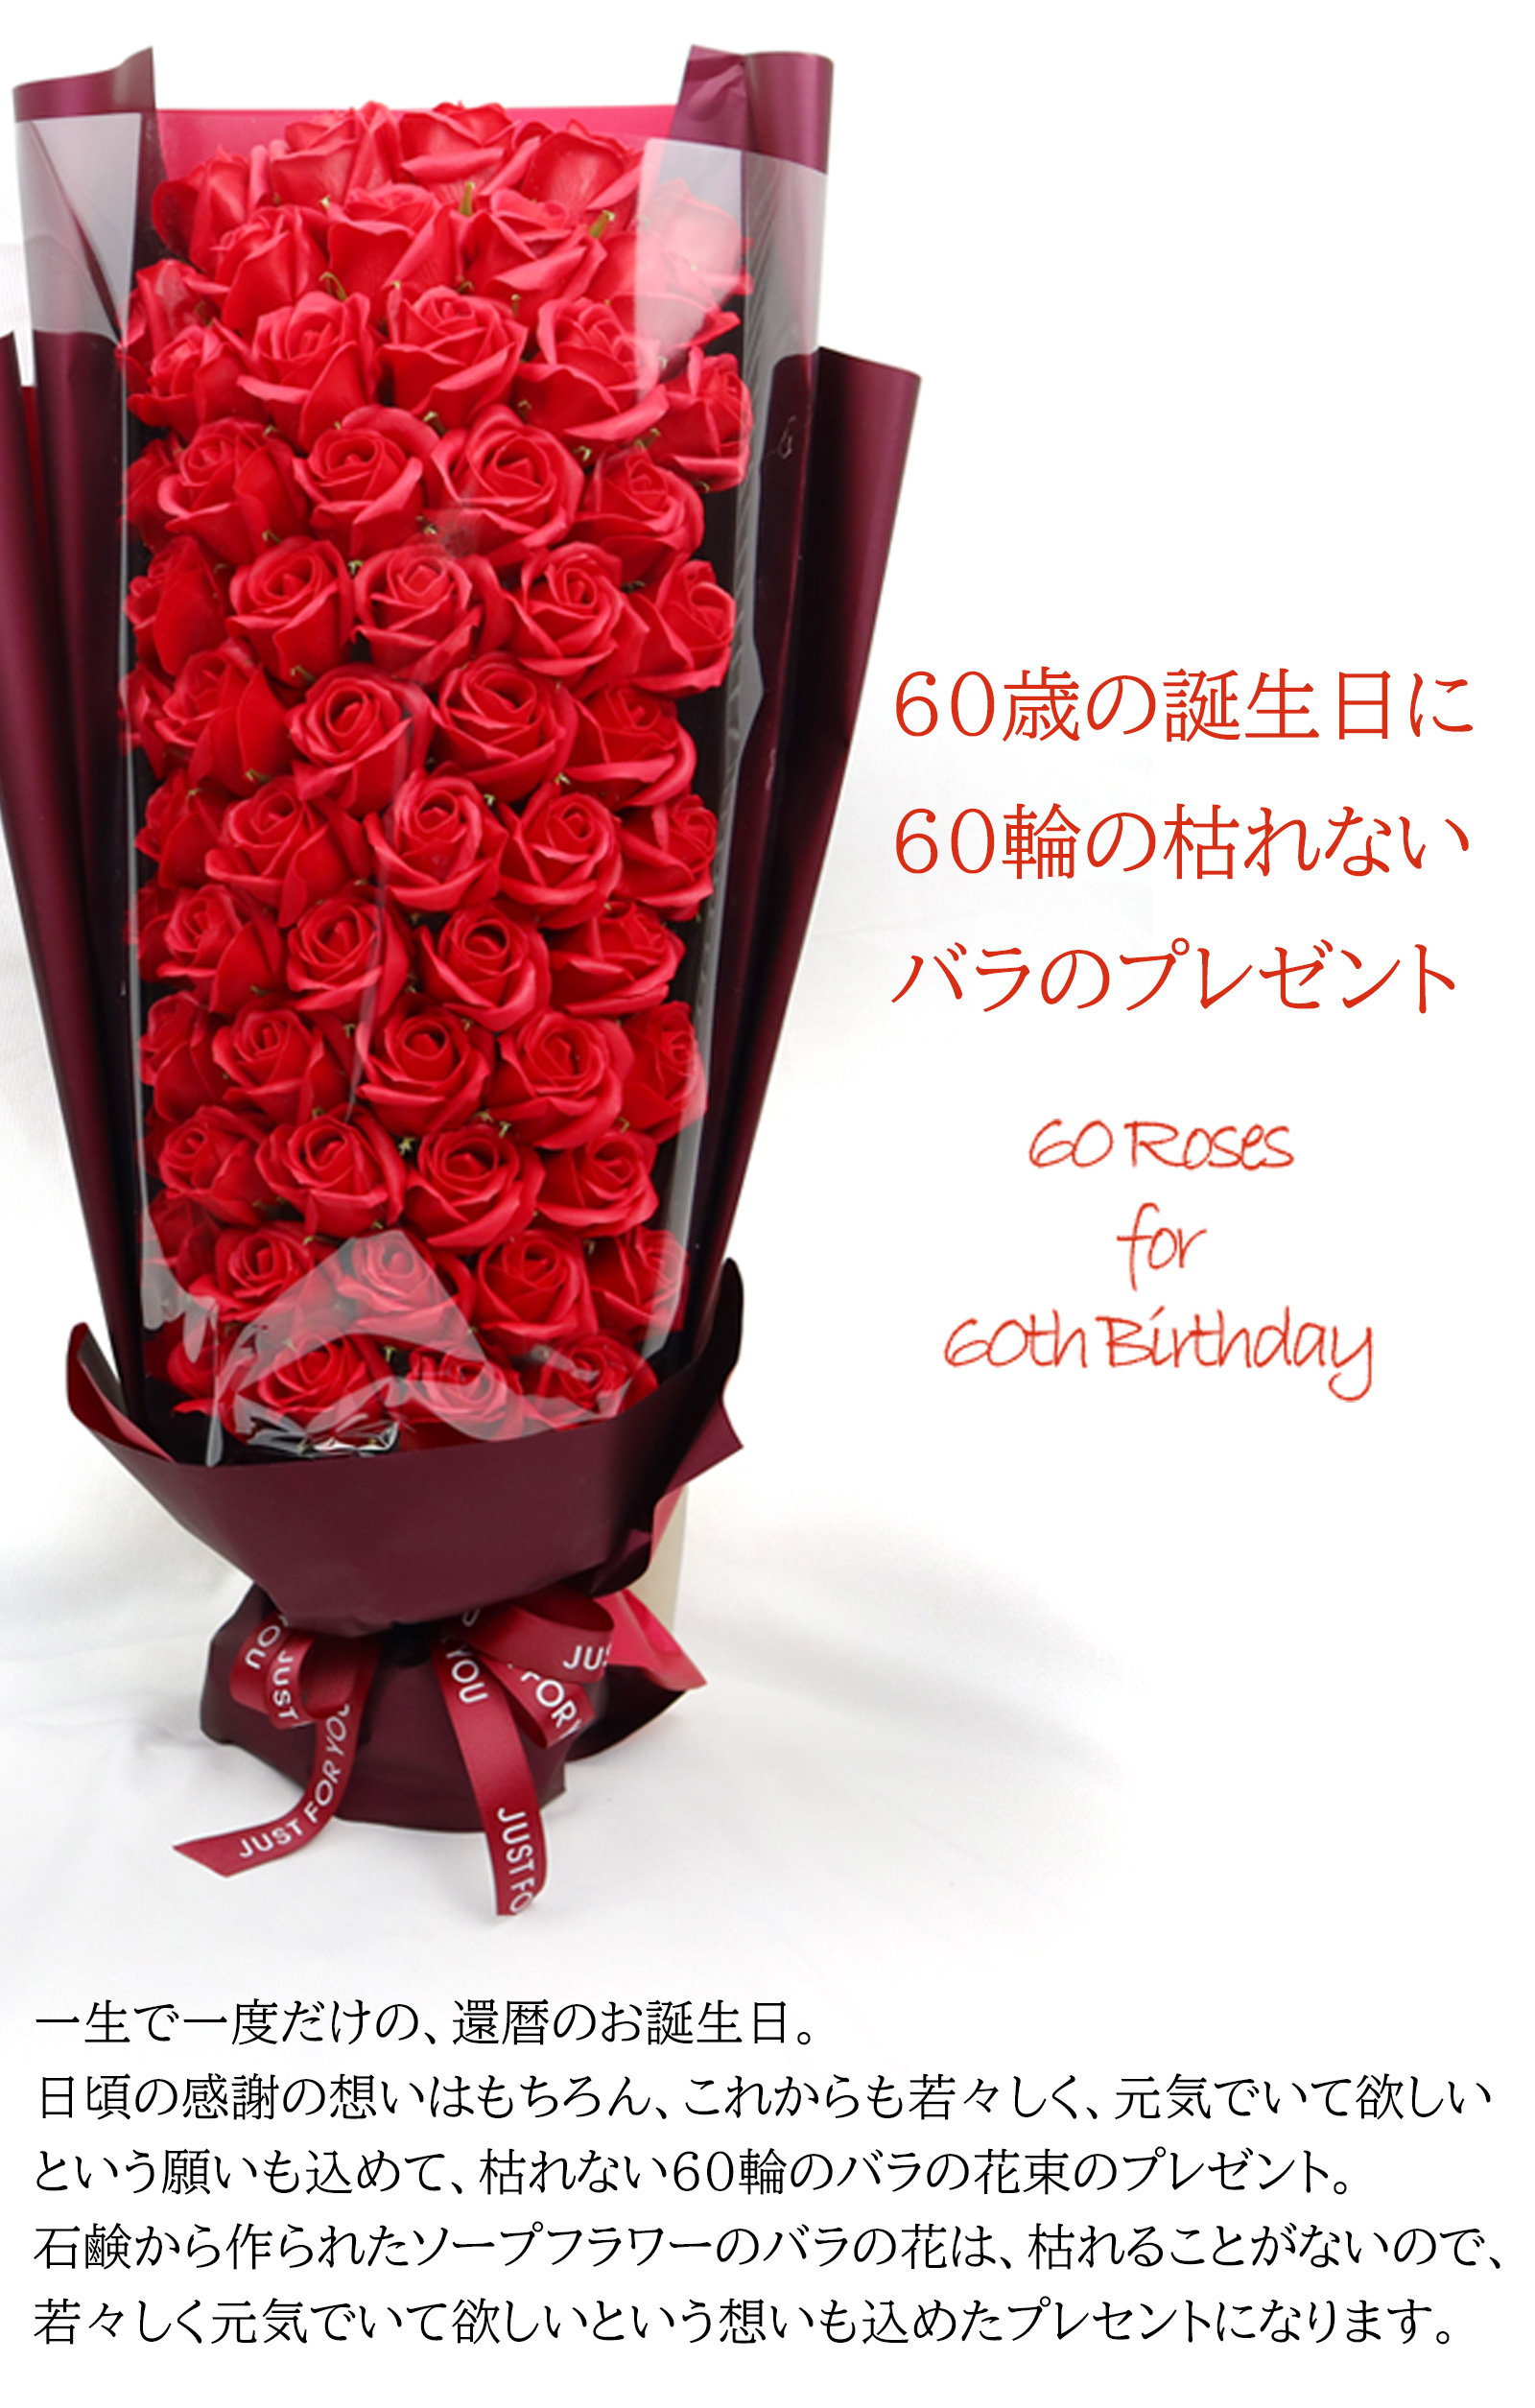 60輪のソープフラワーのバラの花束 | 還暦祝い本舗のプレゼント